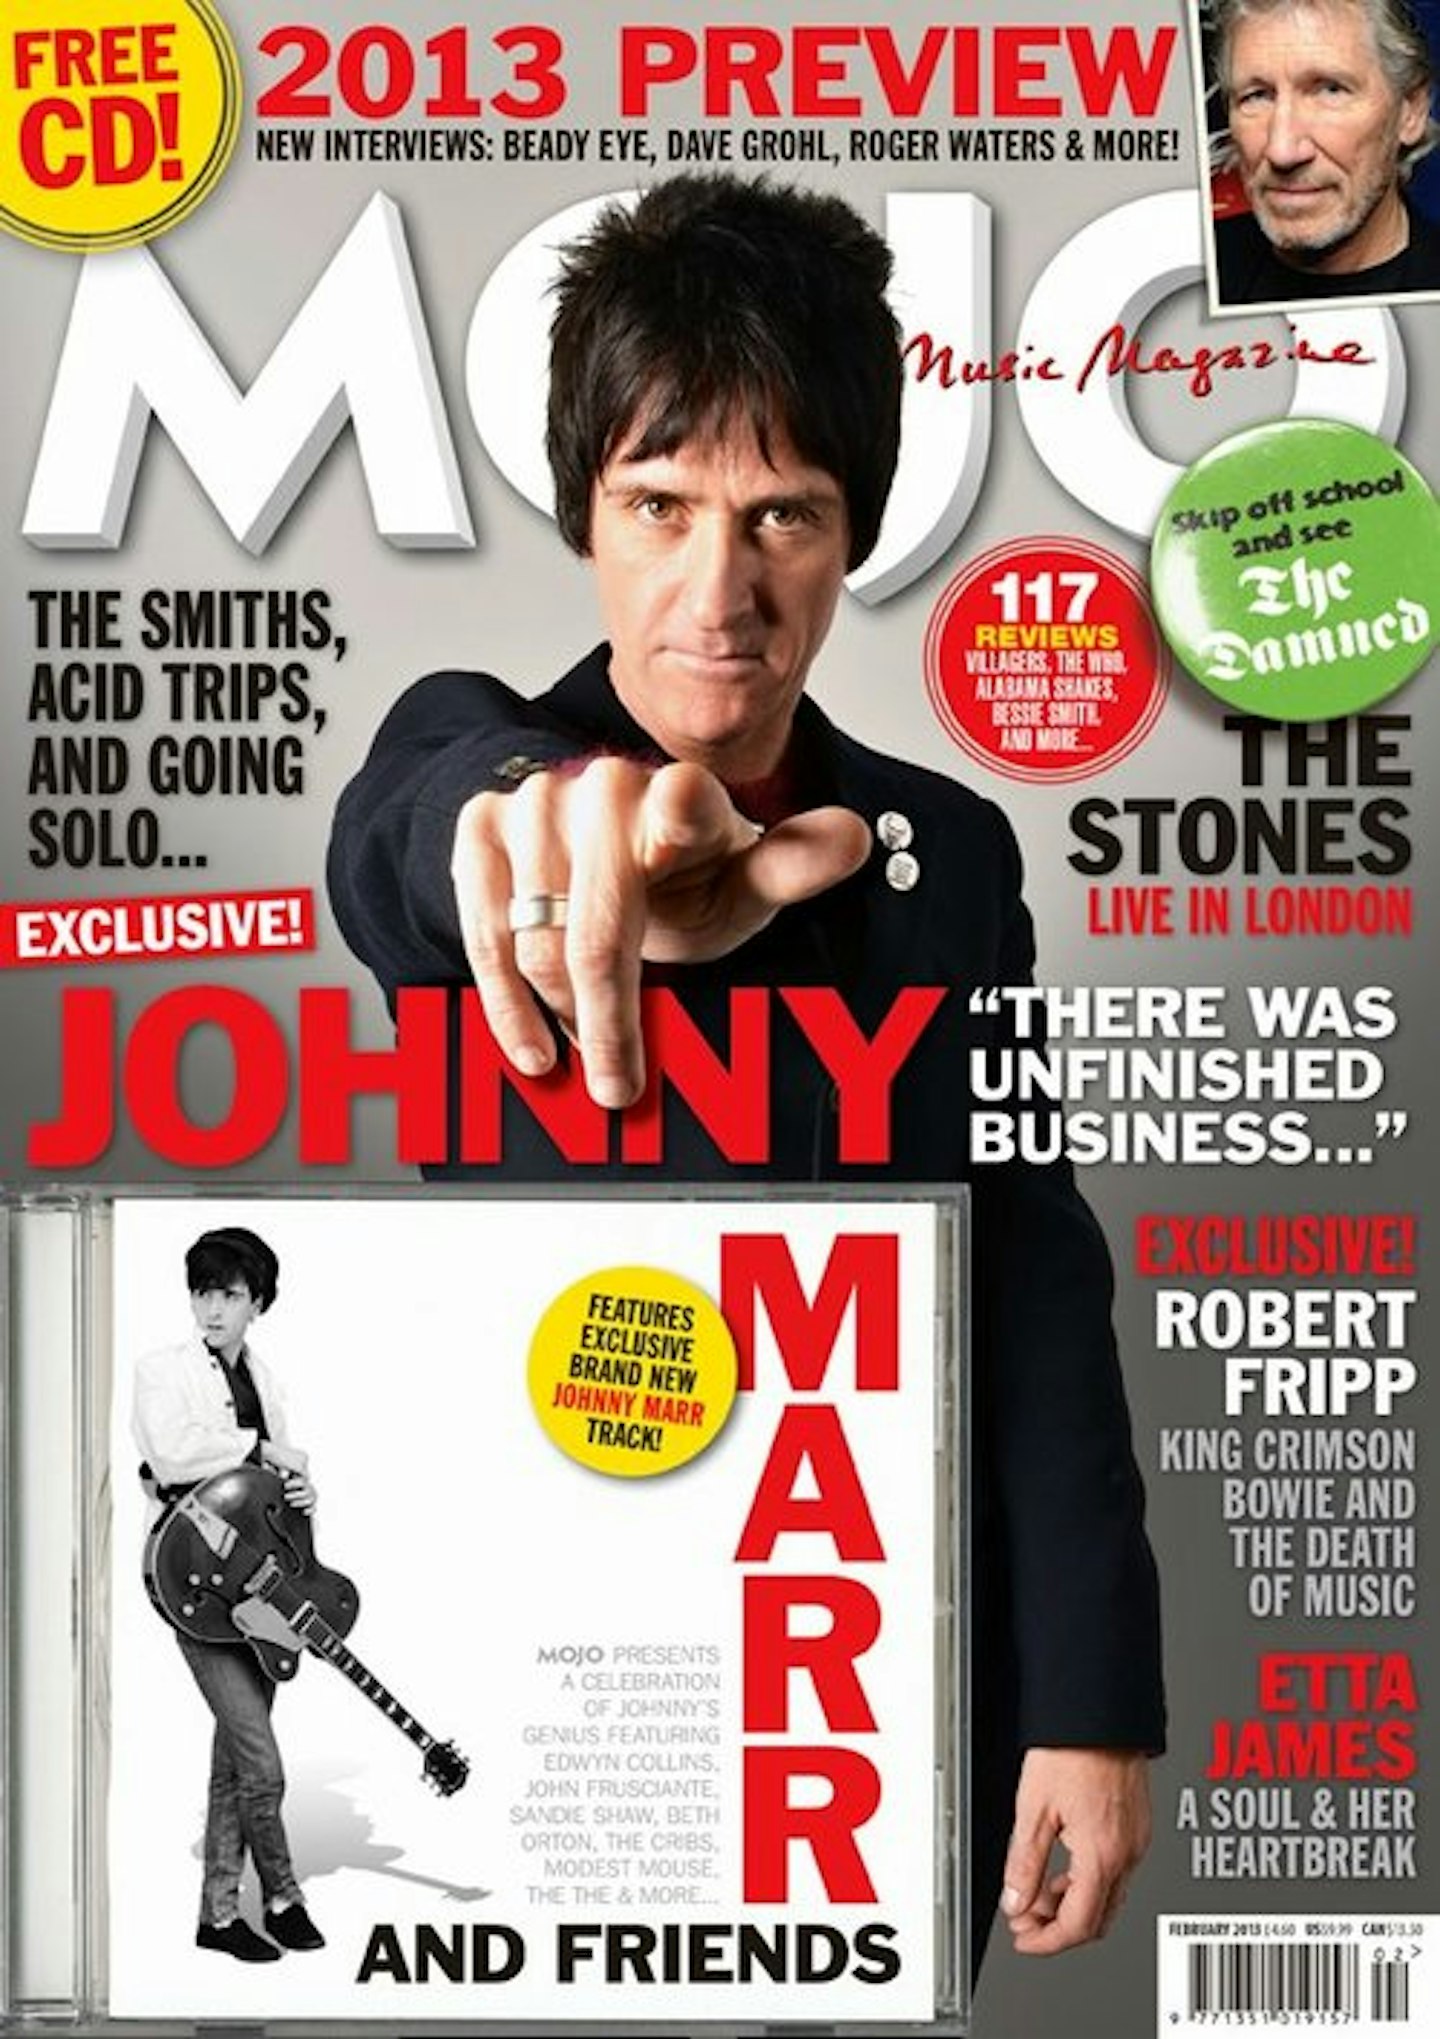 MOJO Issue 231 / February 2013